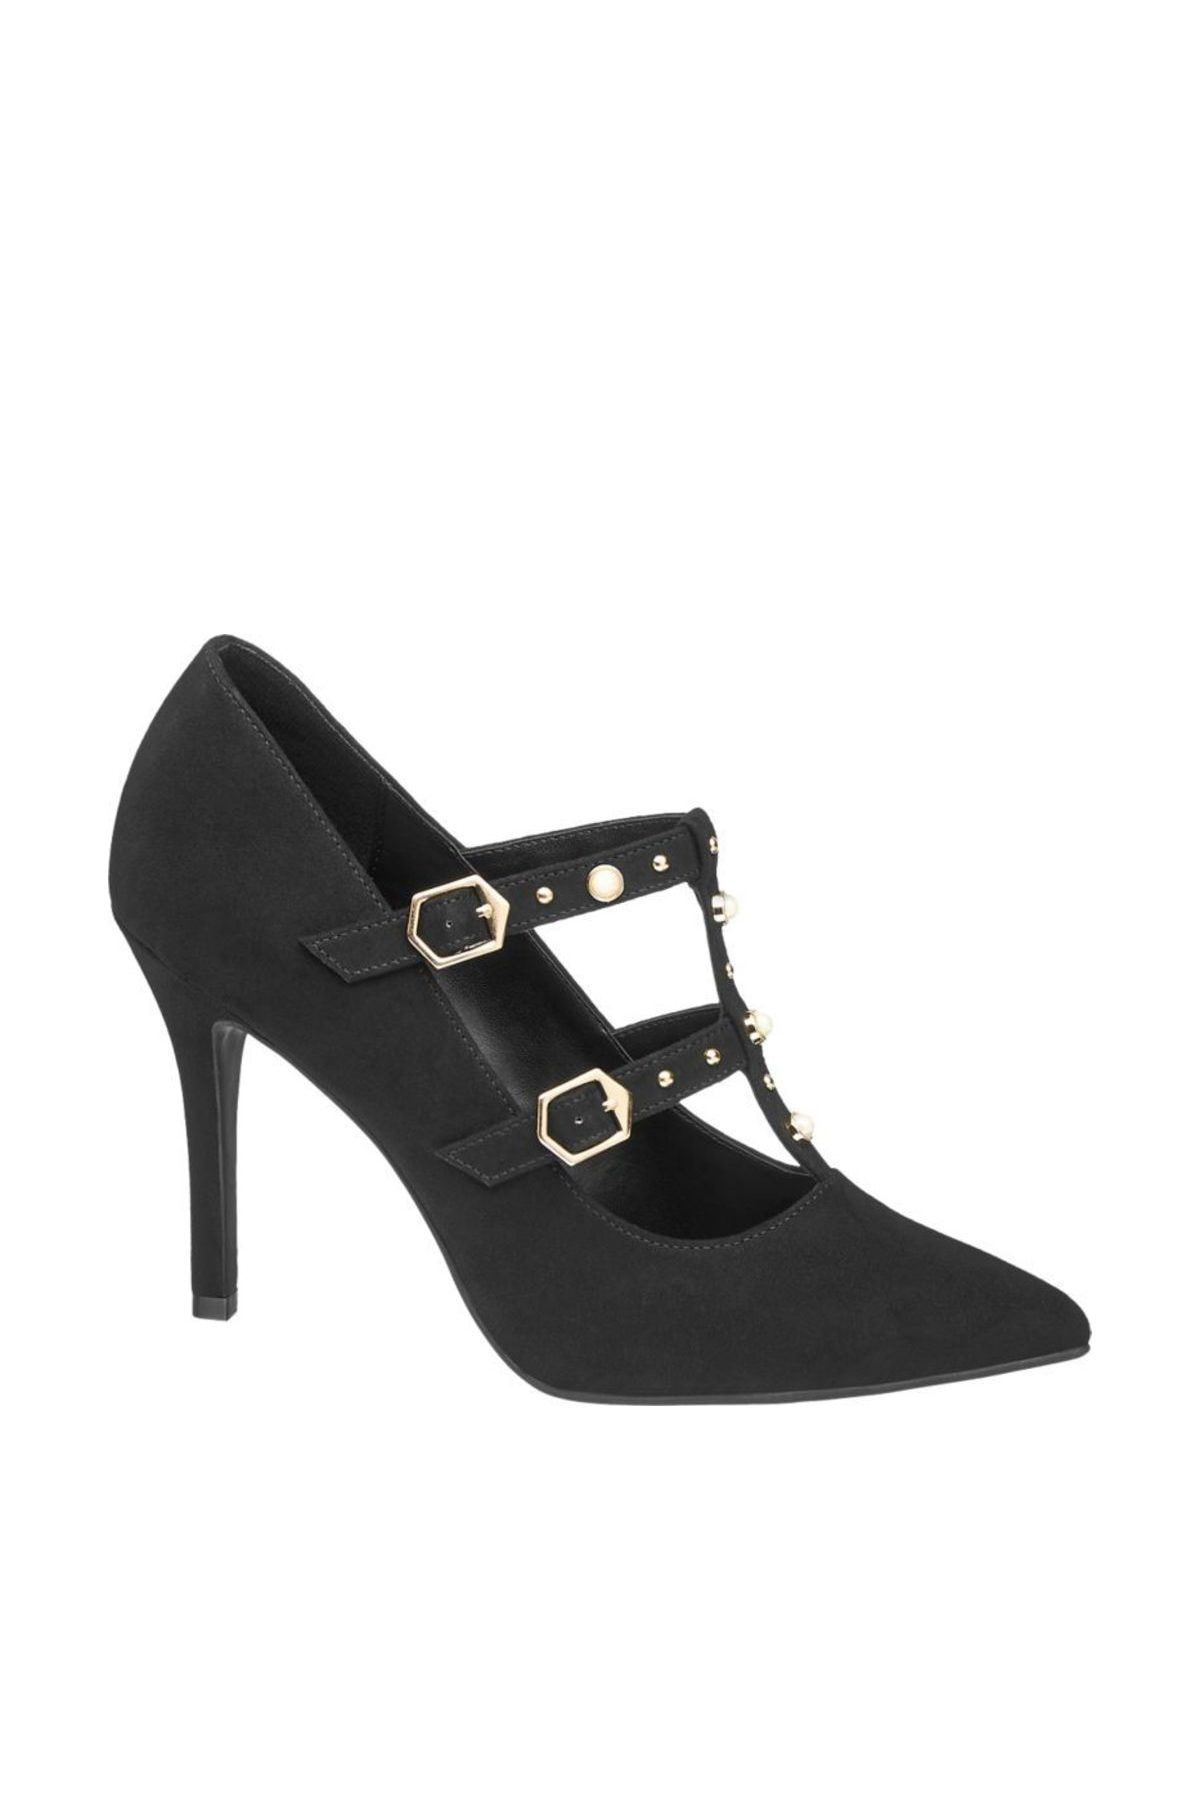 Catwalk Deichmann Kadın Siyah Klasik Topuklu Ayakkabı